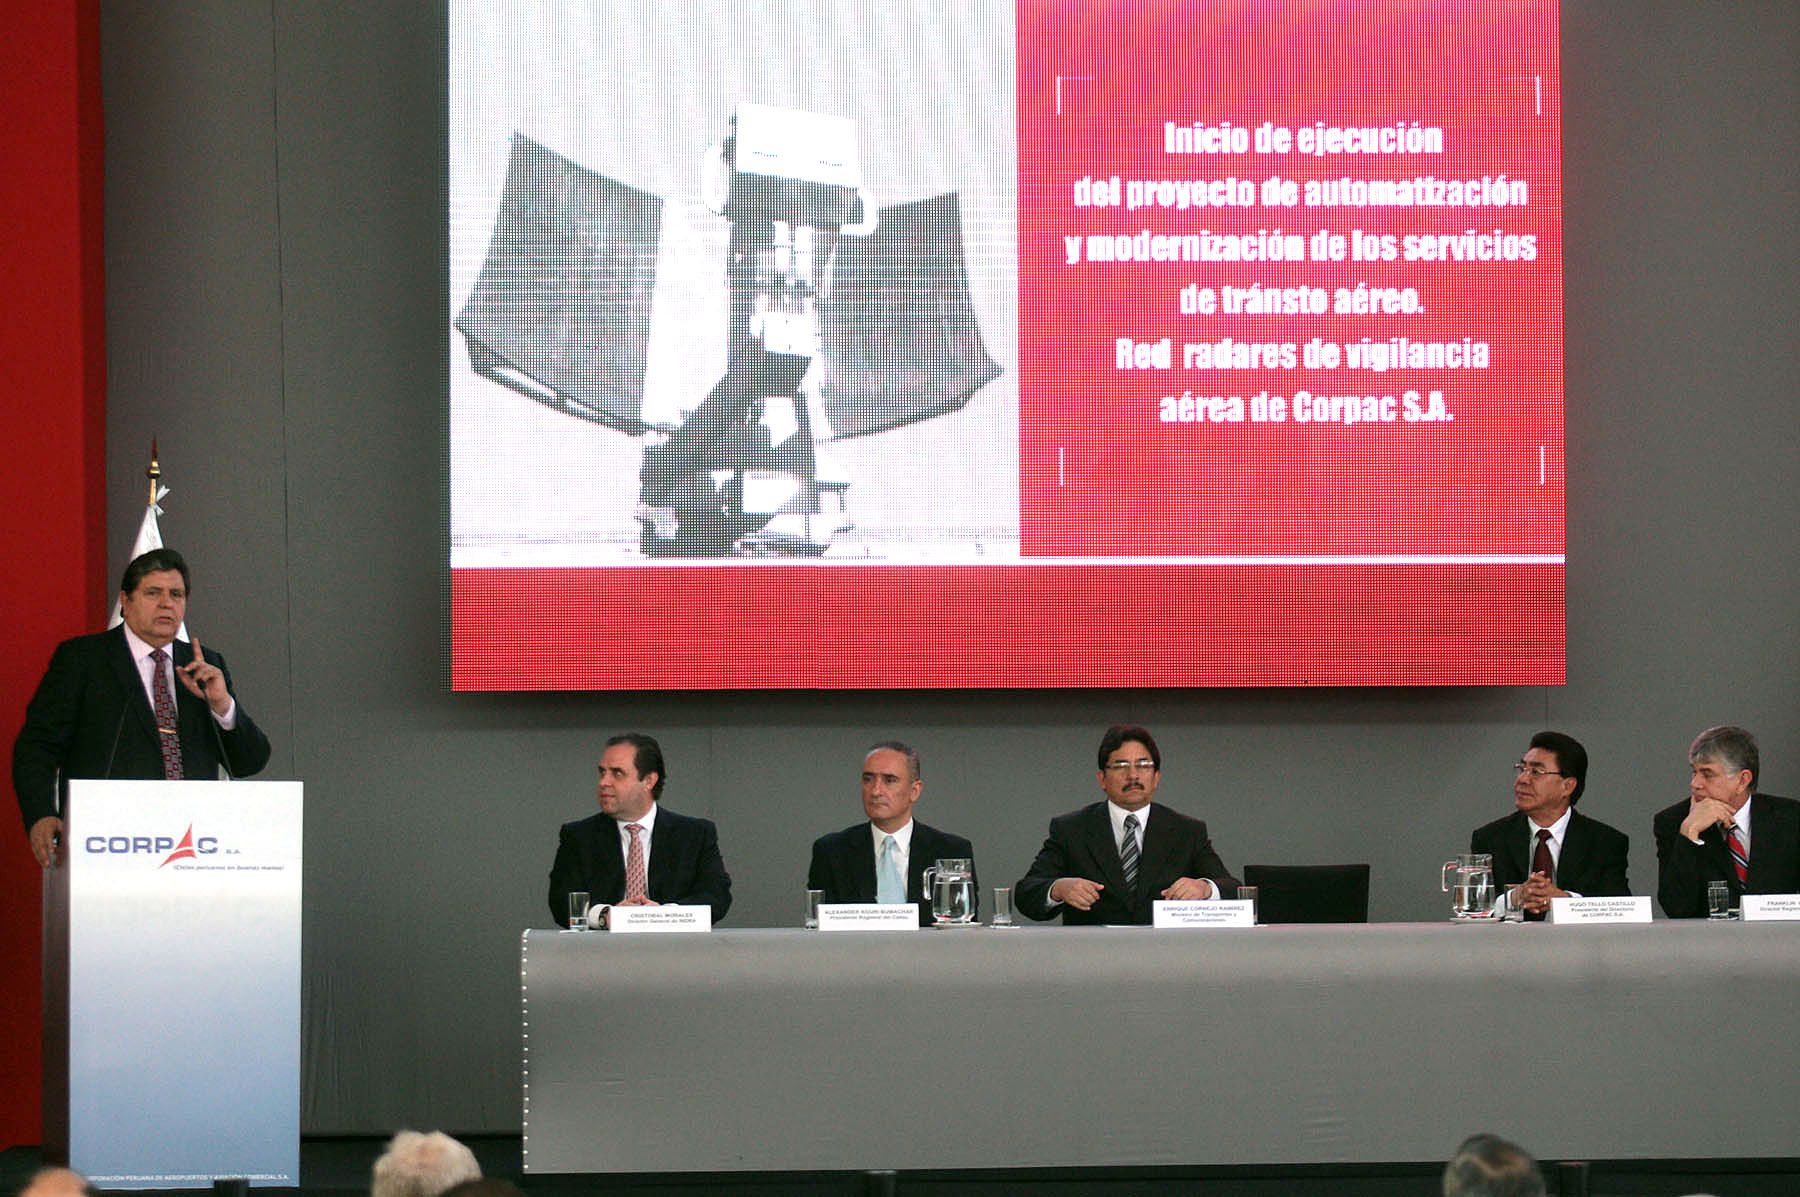 El Presidente Alan García participa en  ceremonia donde se oficializa compra de radares.
Foto: ANDINA/Juan Carlos Guzmán.